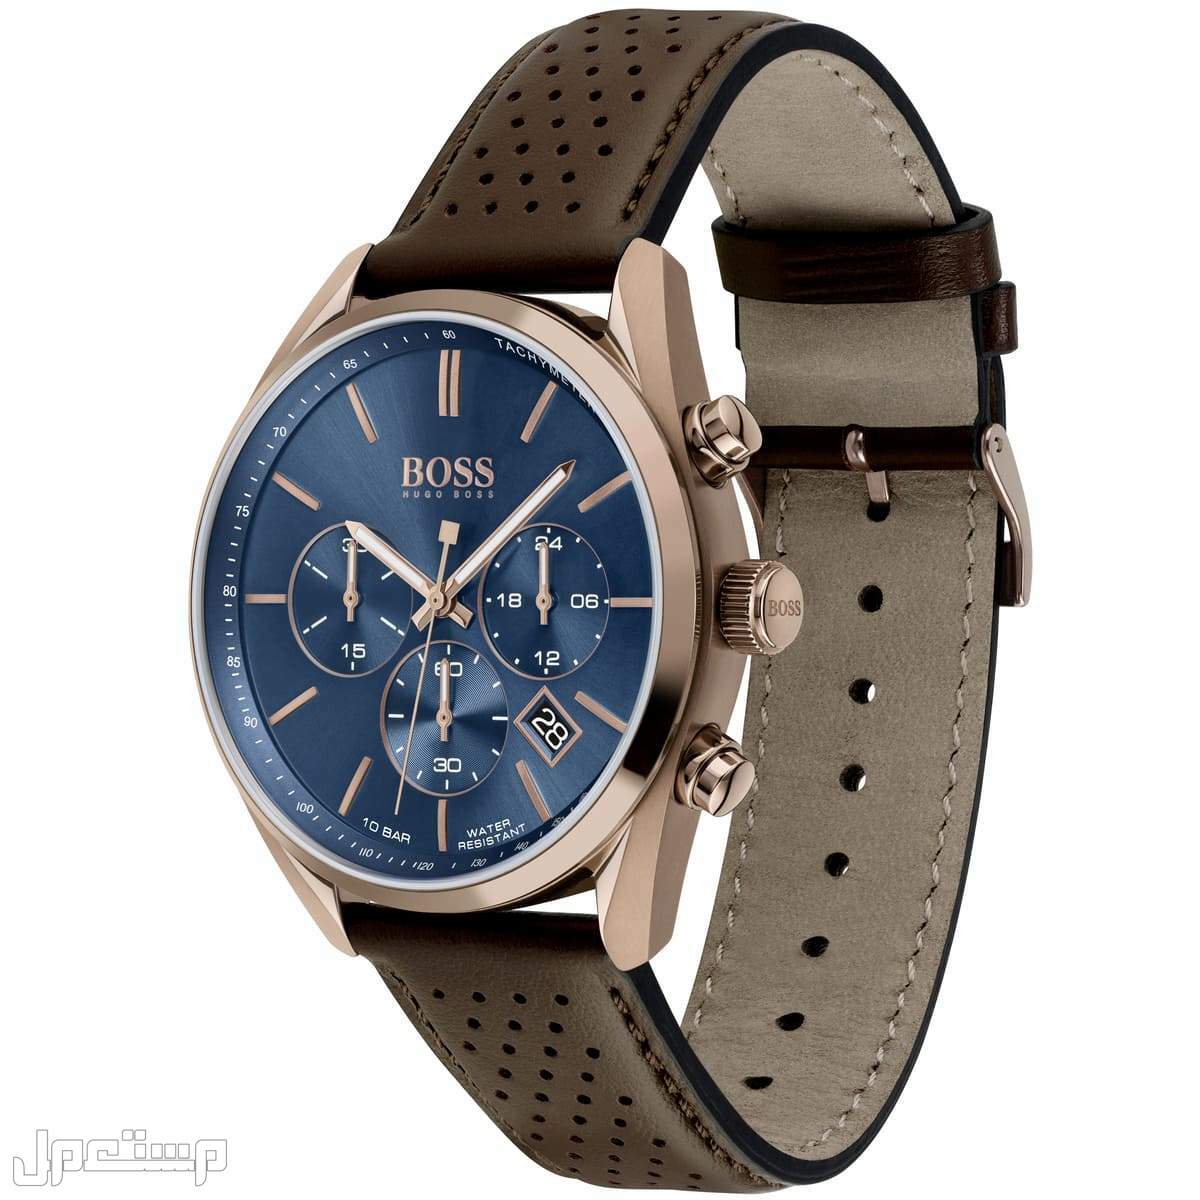 أفضل ساعات بوس Boss الأكثر مبيعا هذا العام وأسعارها في تونس ساع 1513817-hugo-boss-watch-men-blue-dial-leather-brown-strap-quartz-analog-chro